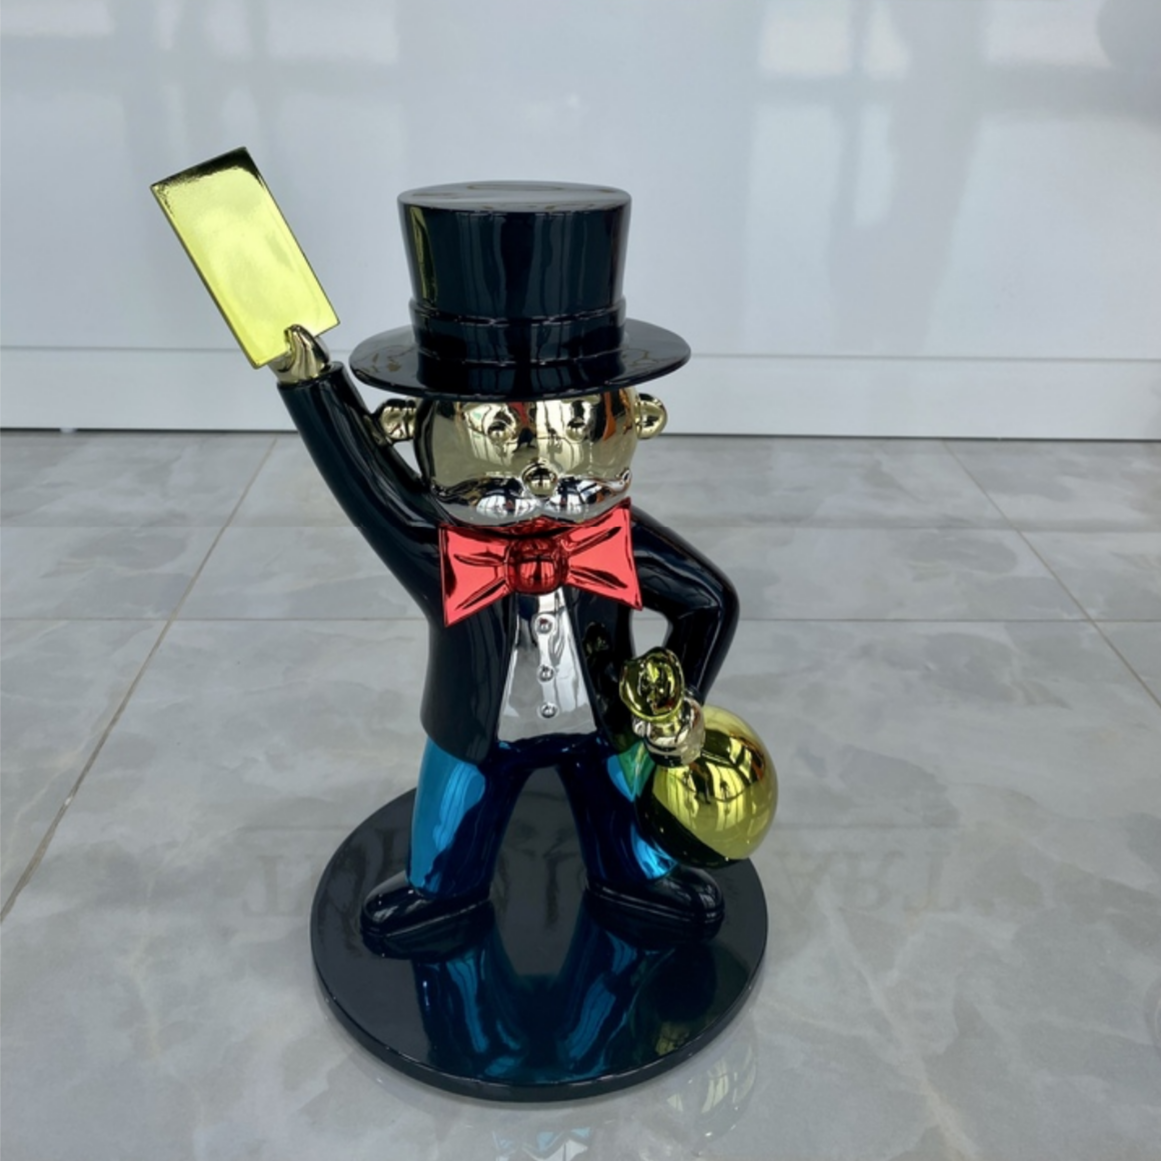 Mister monopoly sculpture